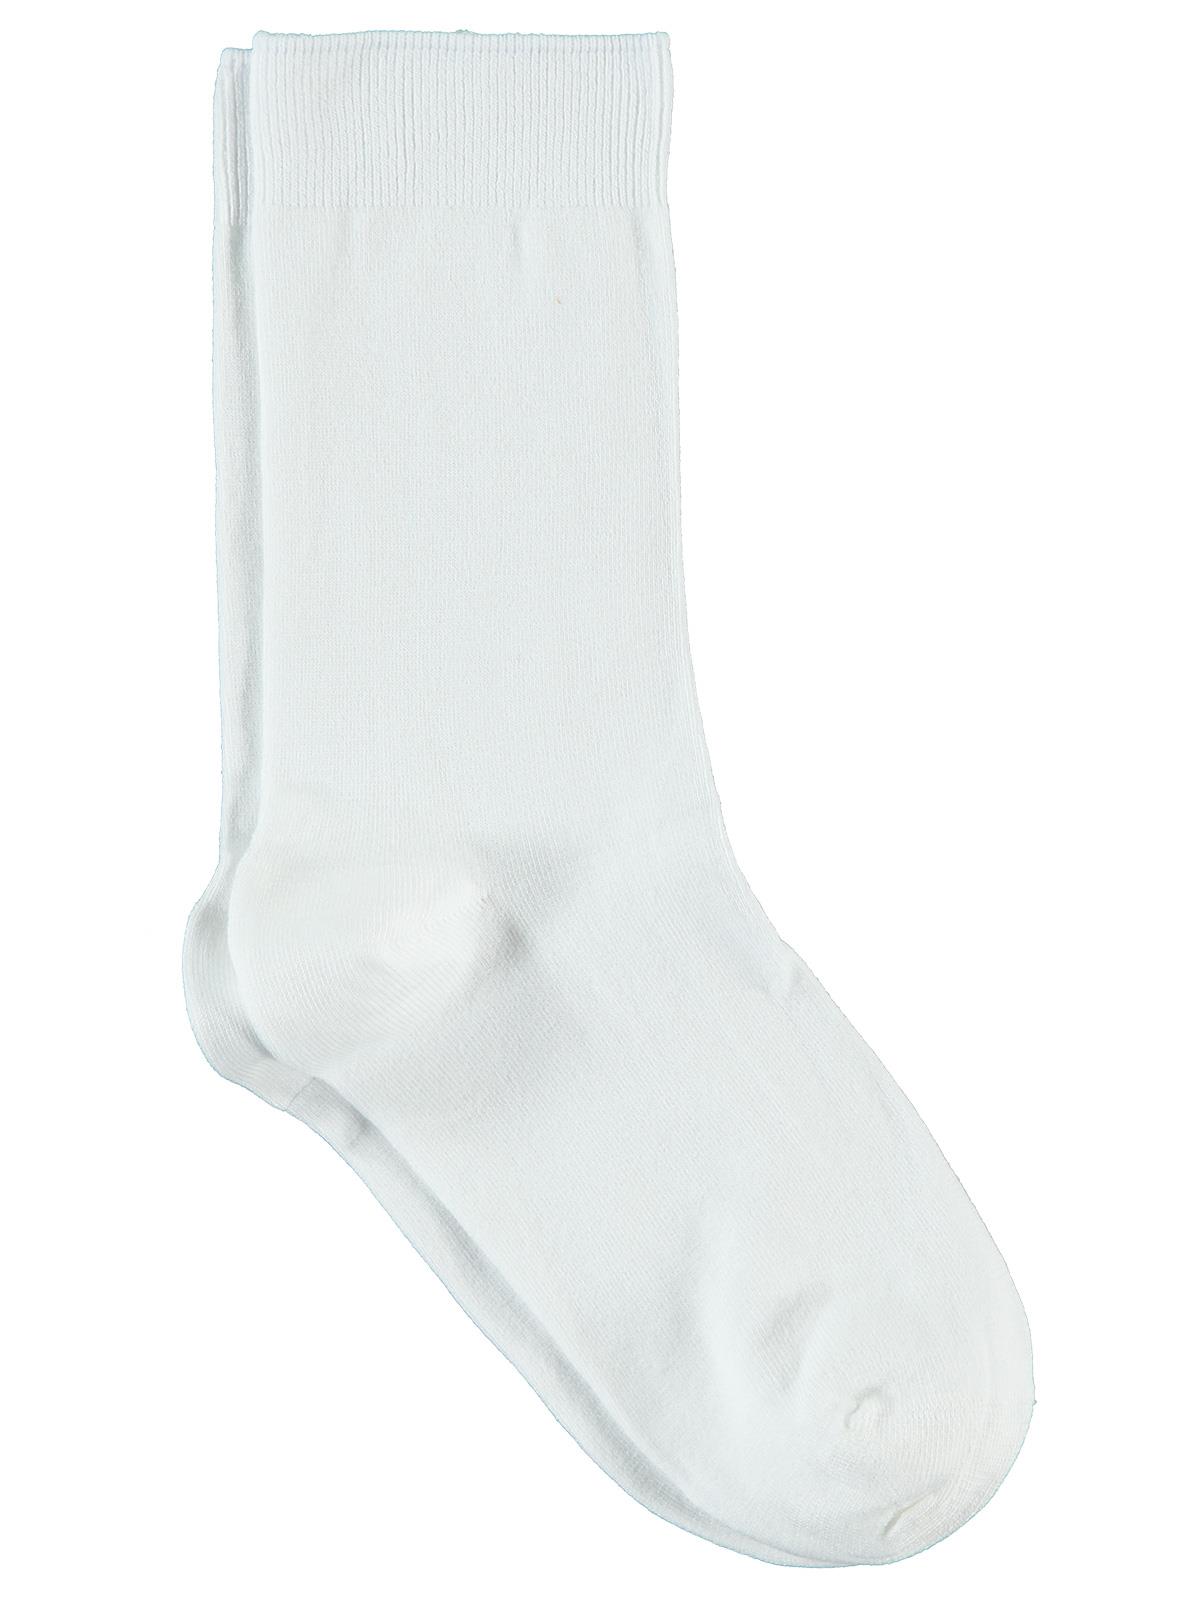 Bella Calze Kız Çocuk Bambu Soket Çorap 36-40 Numara Beyaz